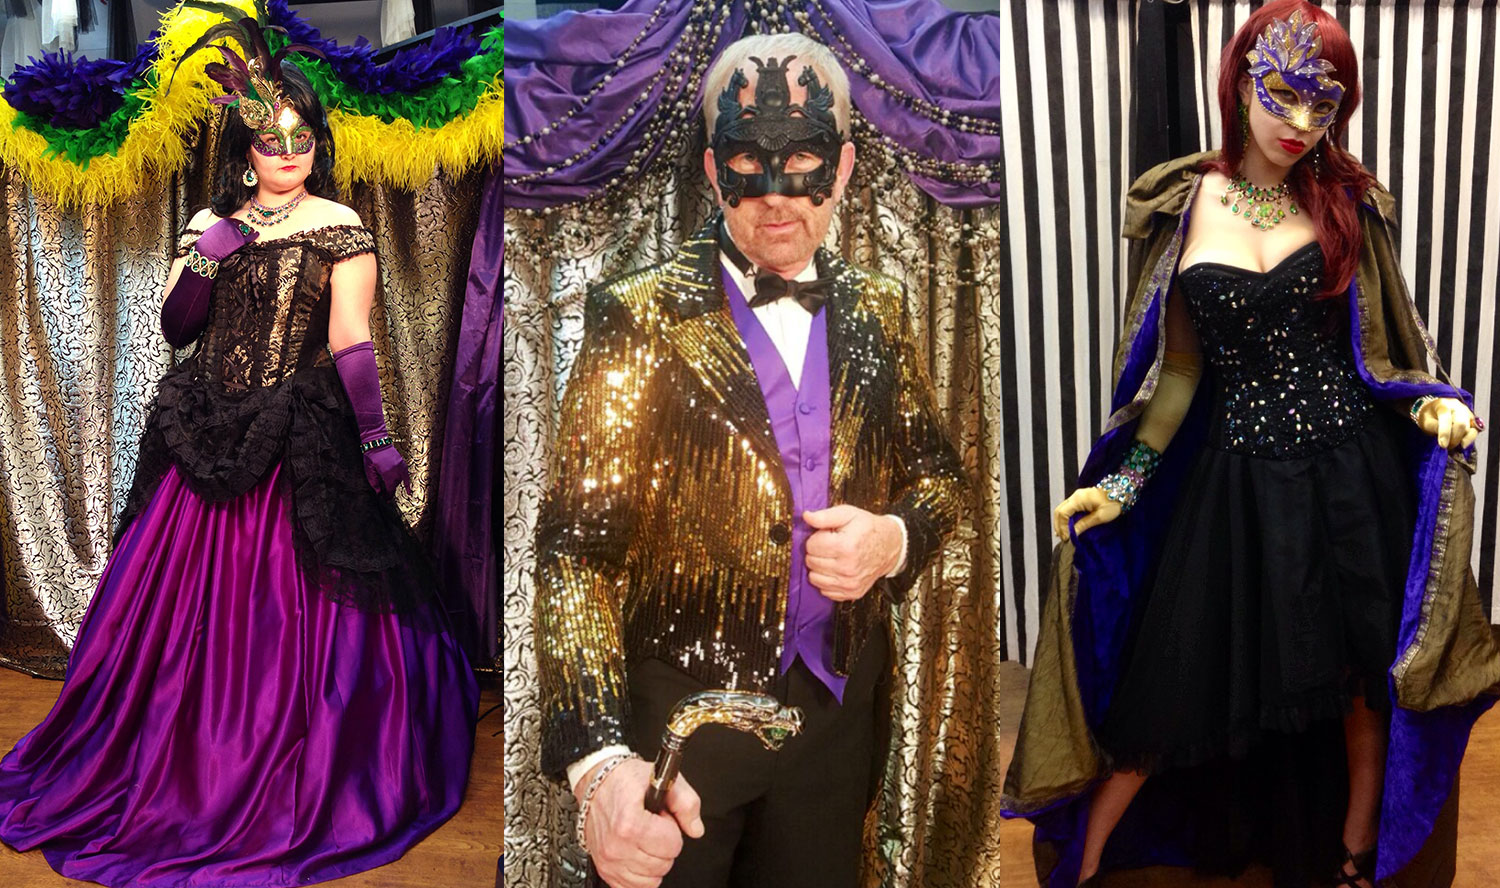 Formal Mardi Gras event costumes // photos courtesy Dallas Vintage Shop